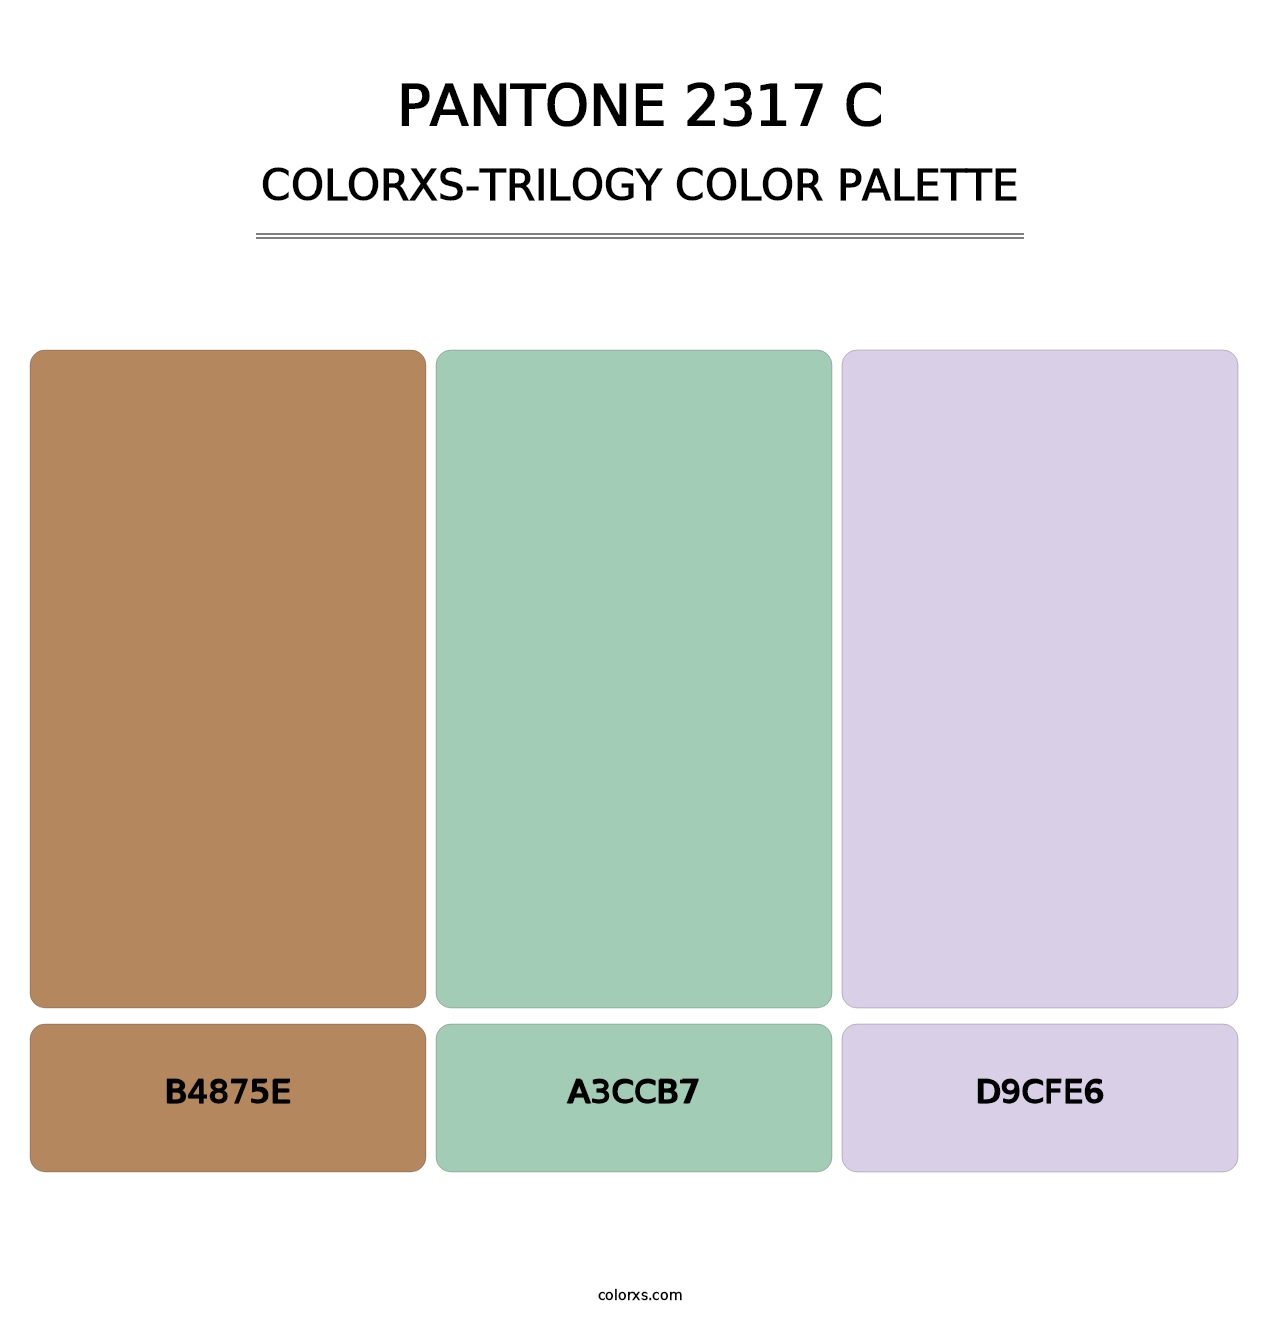 PANTONE 2317 C - Colorxs Trilogy Palette